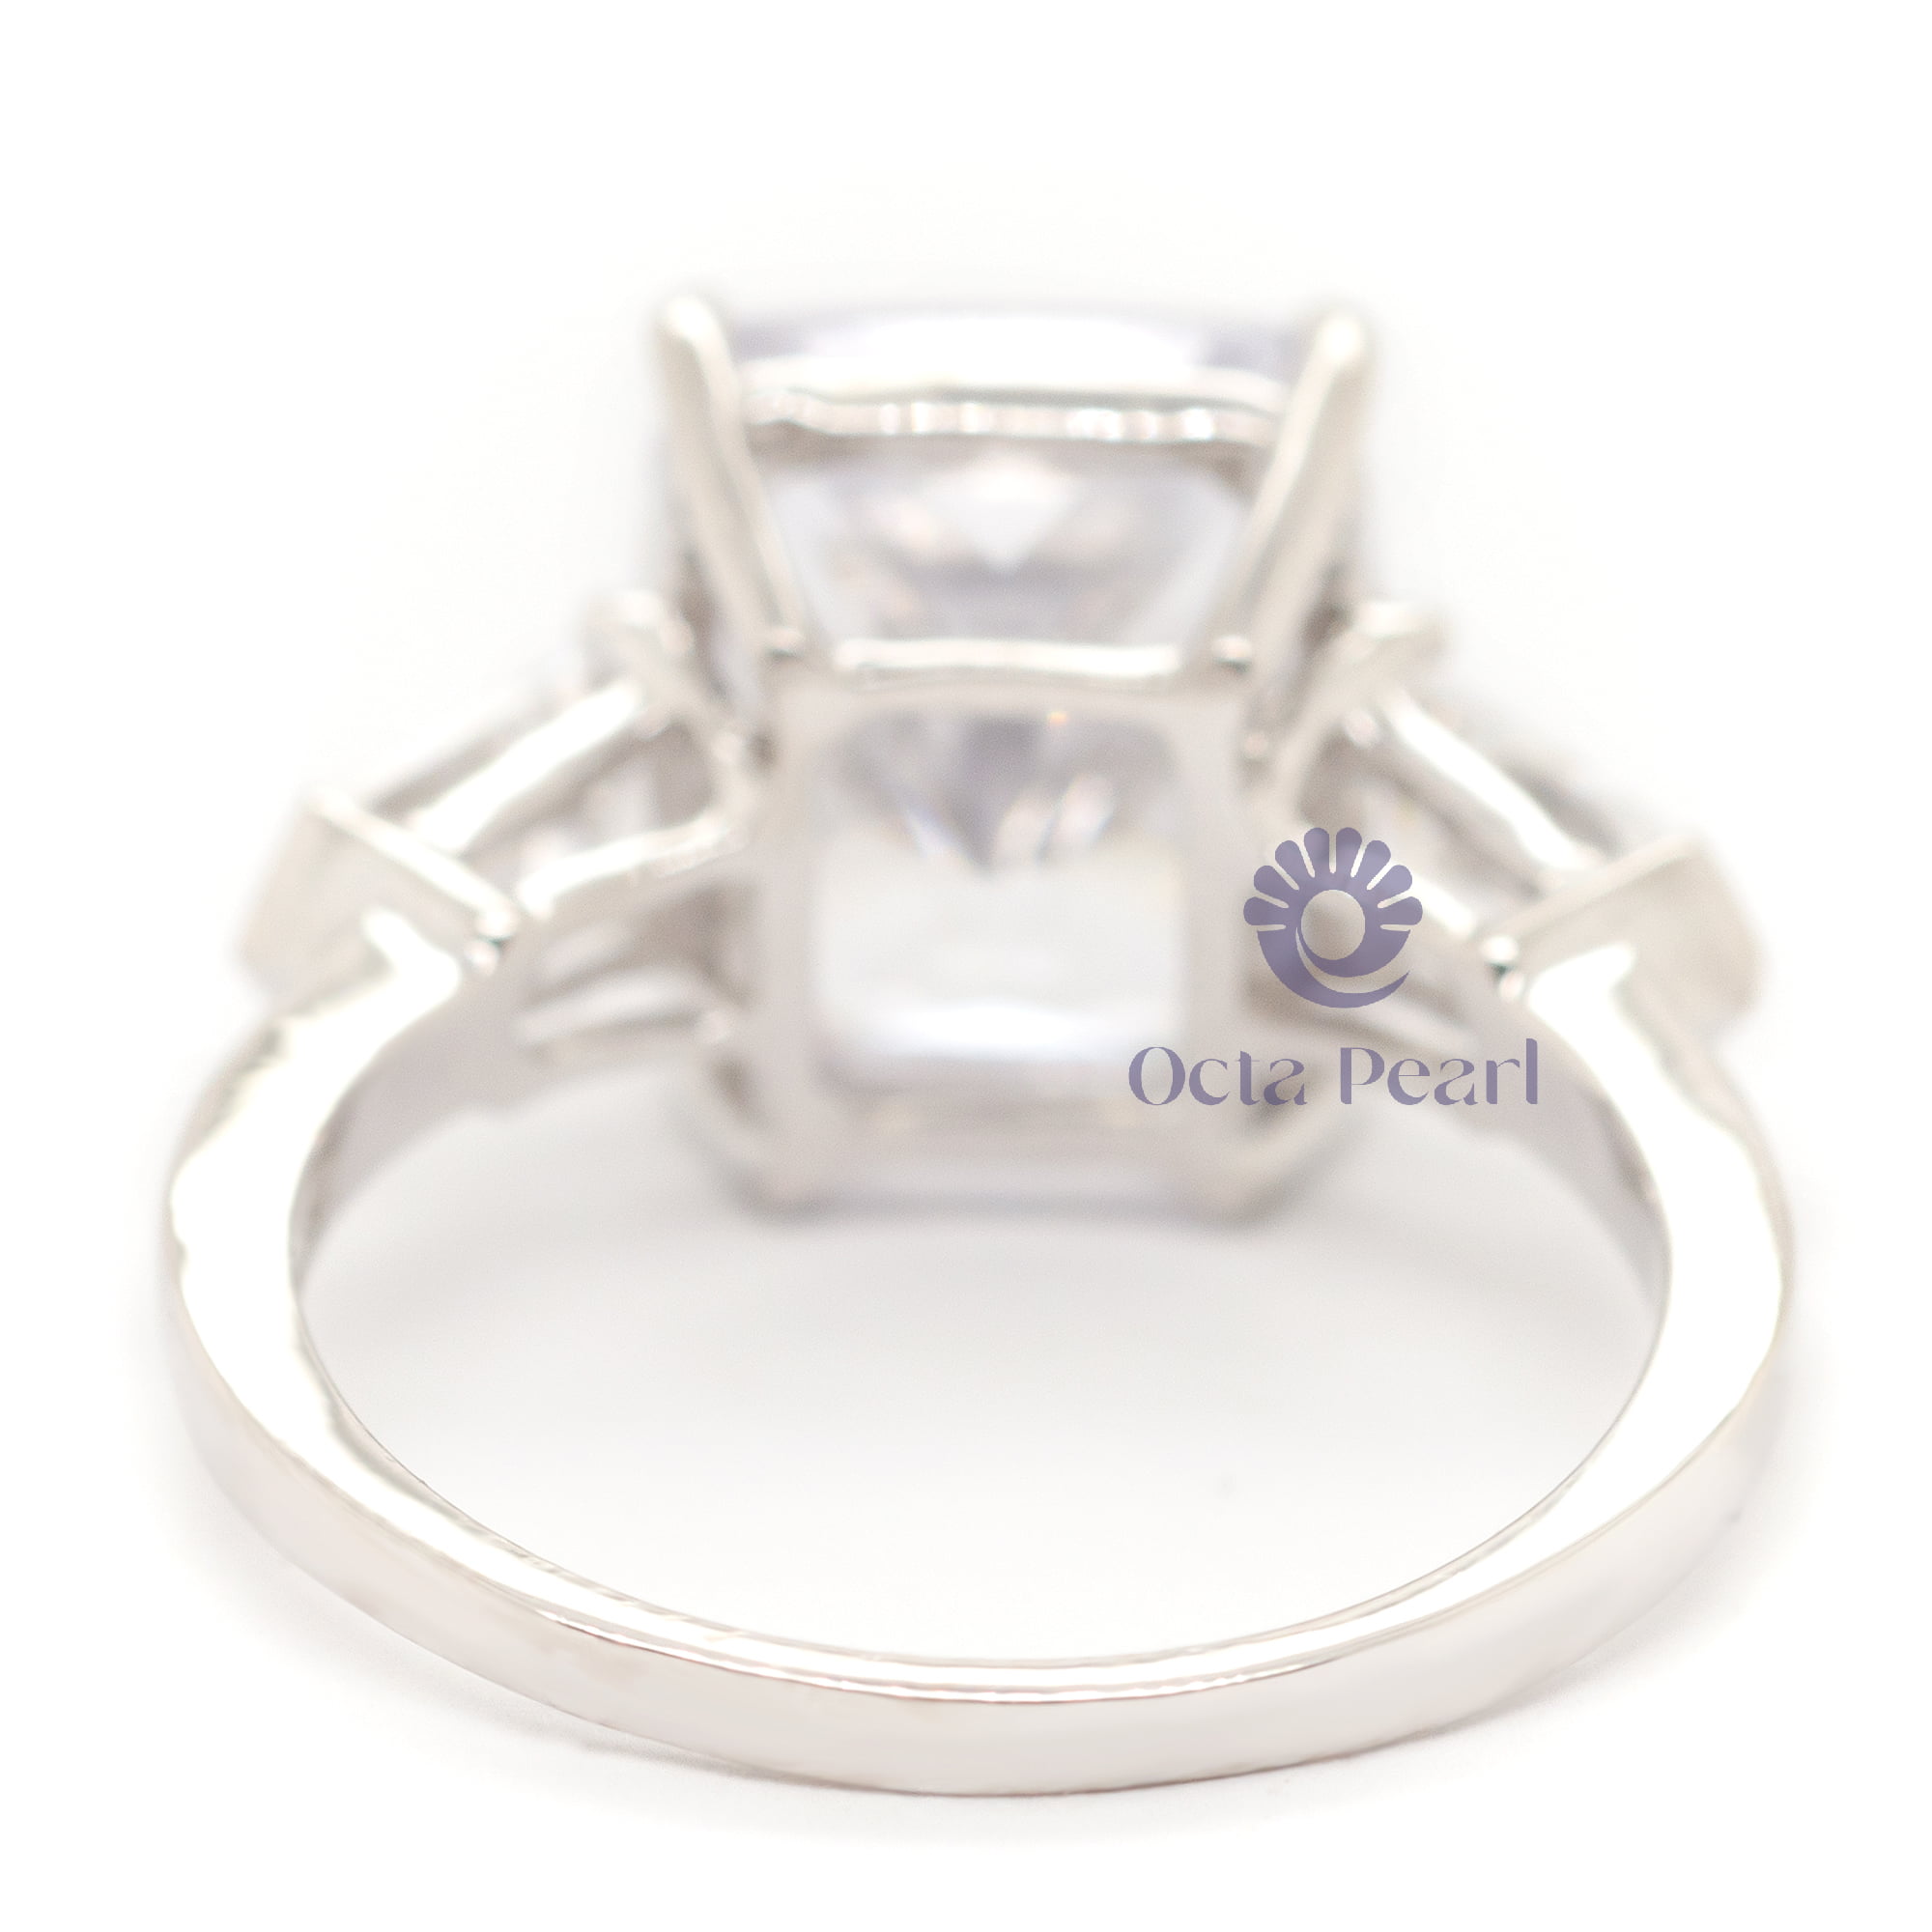 Elongated Cushion & Side Fancy Cut CZ 3-Stone Bridesmaid Gift Wedding Ring (8 1/20 TCW)